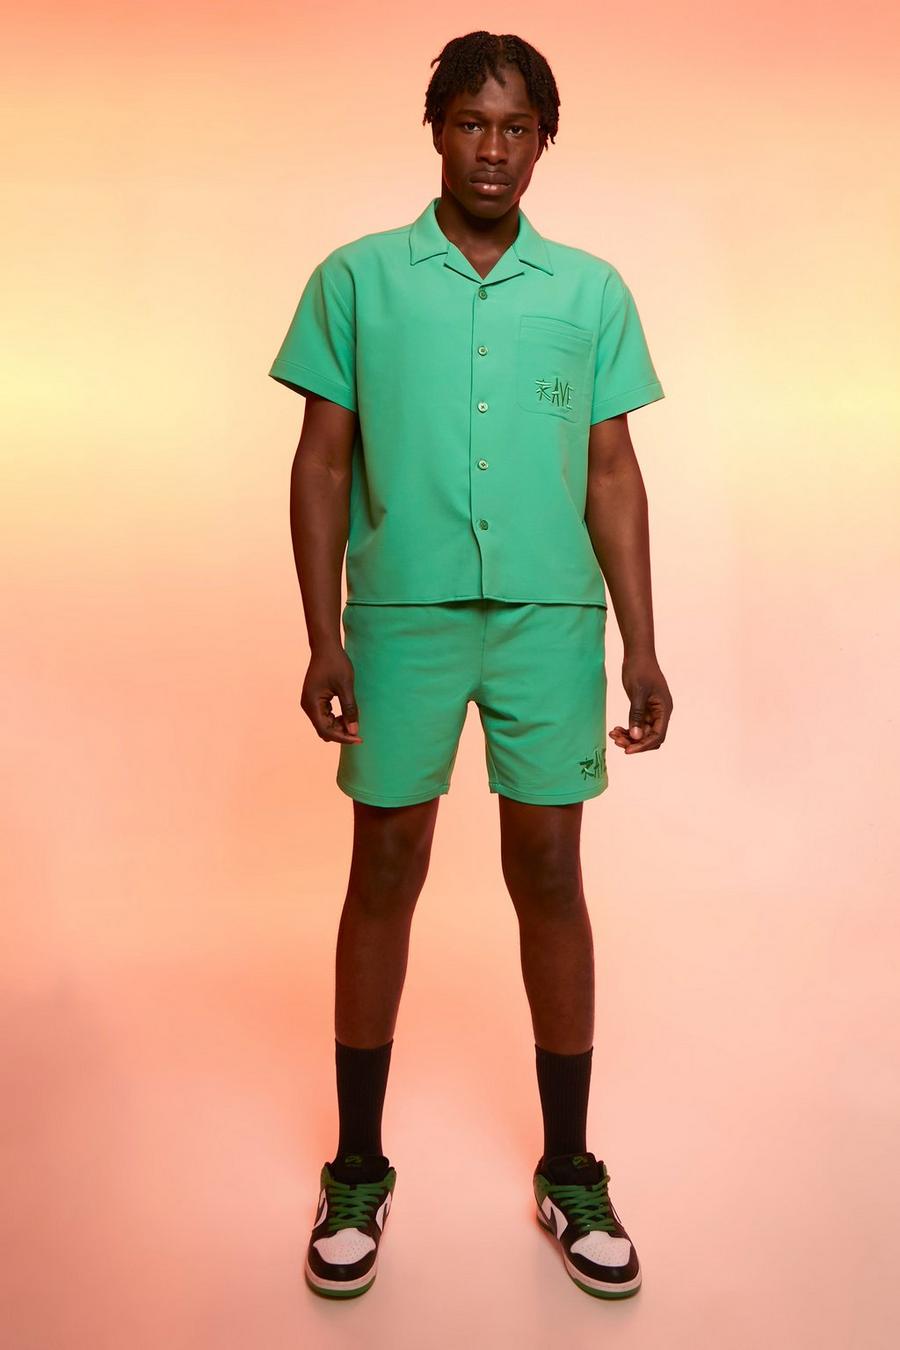 Camicia squadrata in nylon 4 way Stretch & pantaloncini, Green verde